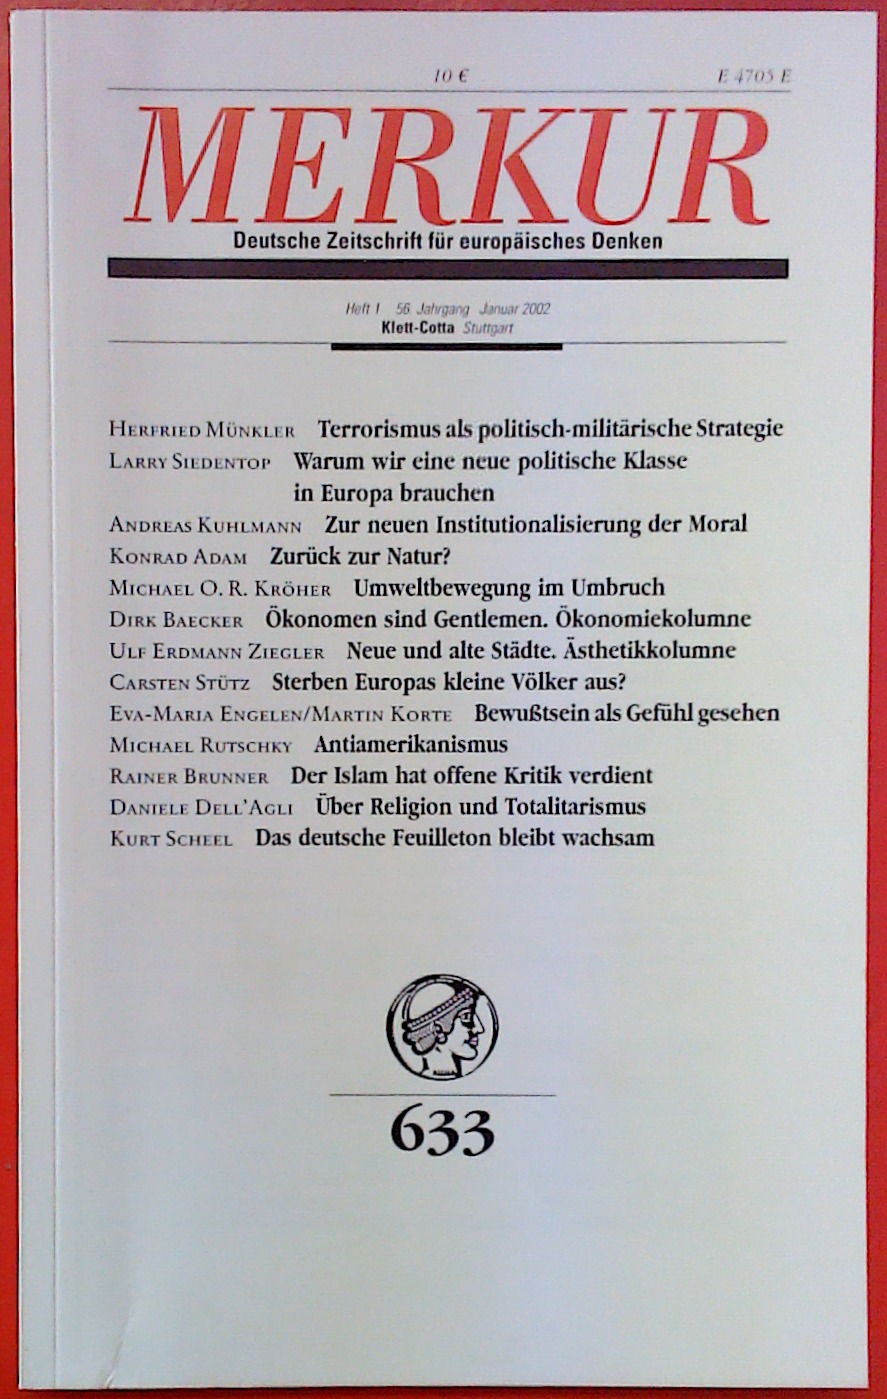 Merkur - Deutsche Zeitschrift für europäisches Denken 633 (Heft 1 / 56. Jahrgang / Januar 2002) - Hrsg: Karl Heinz Bohrer und Kurt Scheel